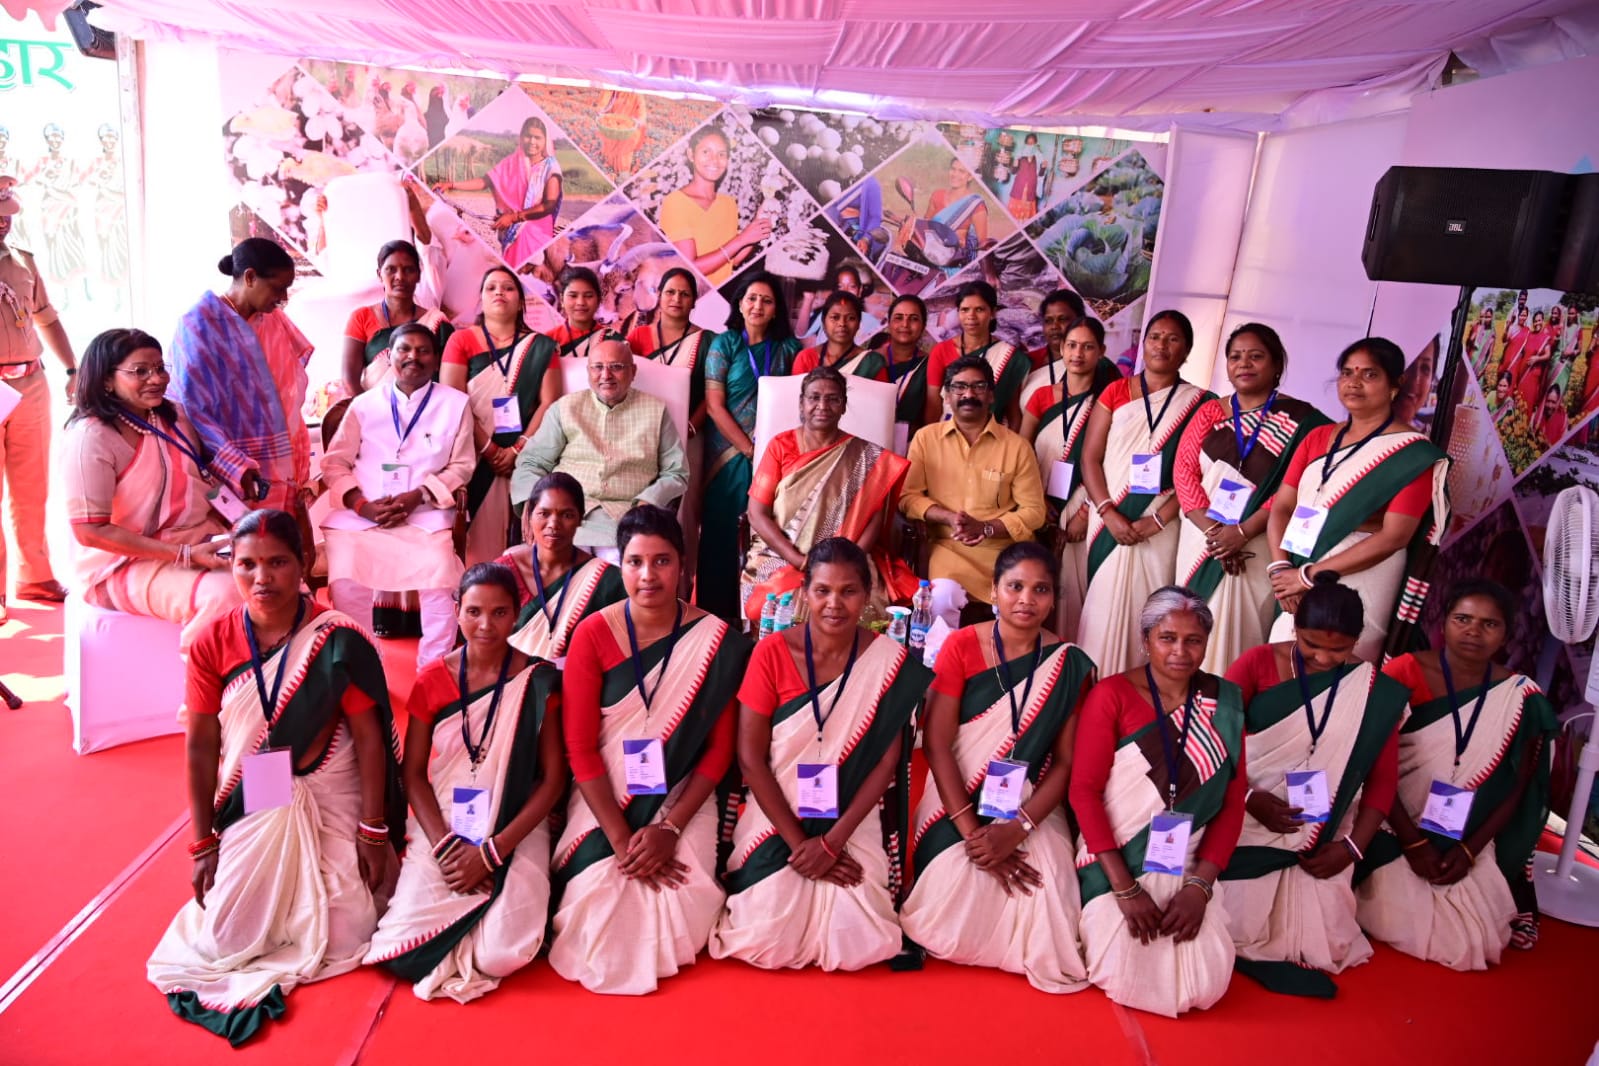 खूंटी में इतनी बड़ी संख्या में महिलाओं की उपस्थिति गर्व की बात: राज्यपाल-The presence of such a large number of women in Khunti is a matter of pride: Governor